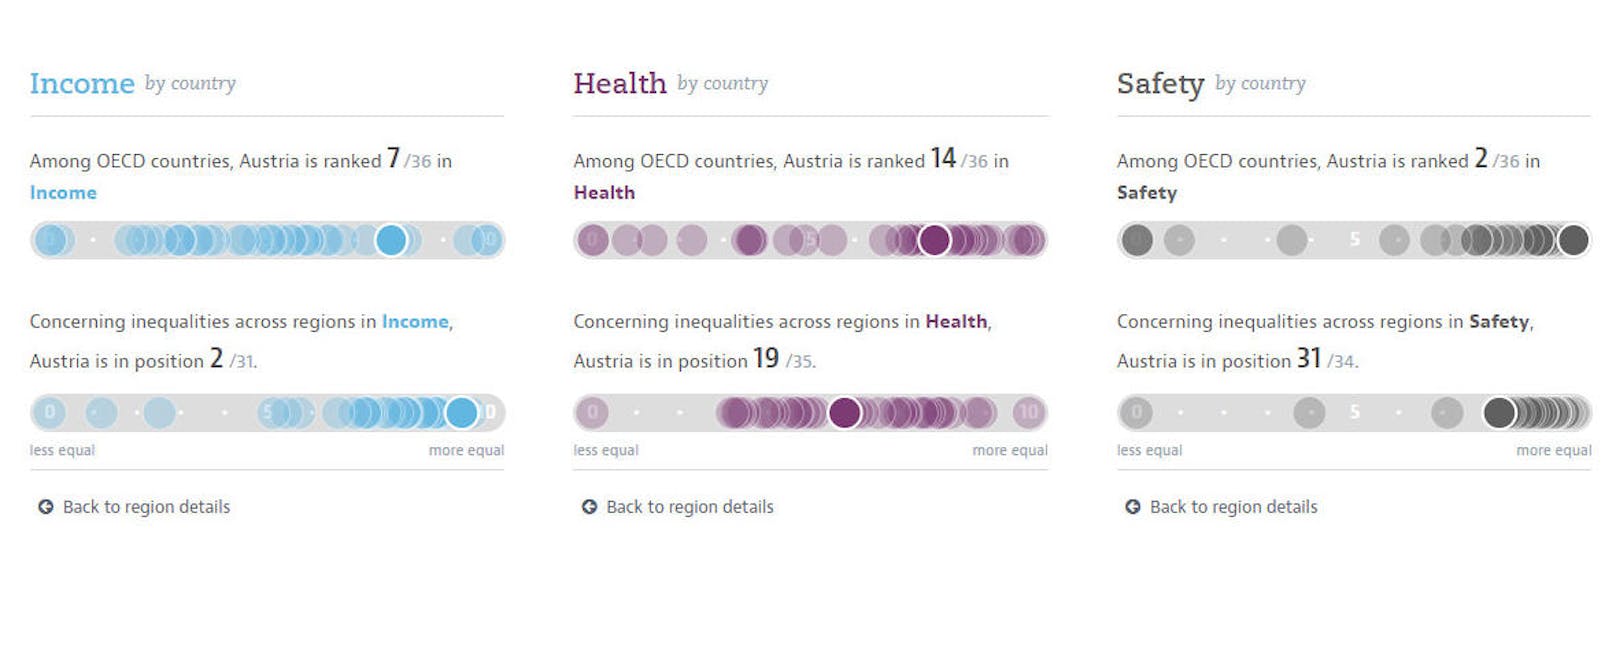 Österreich im Ländervergleich: Einkommen, Gesundheit und Sicherheit